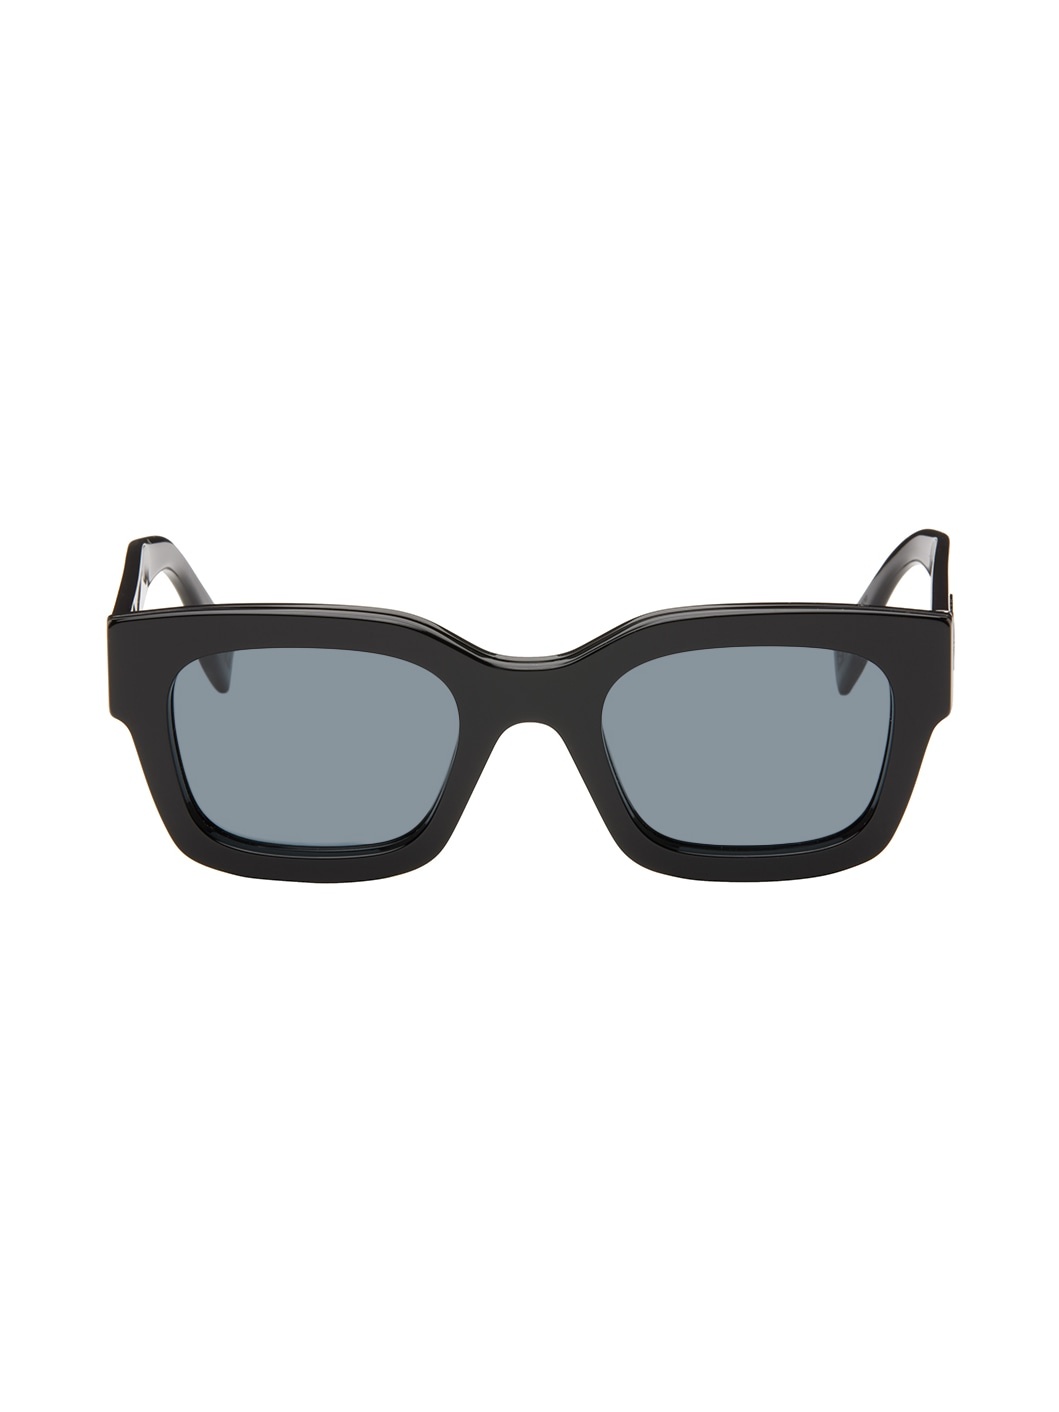 Black Fendi Signature Sunglasses - 1